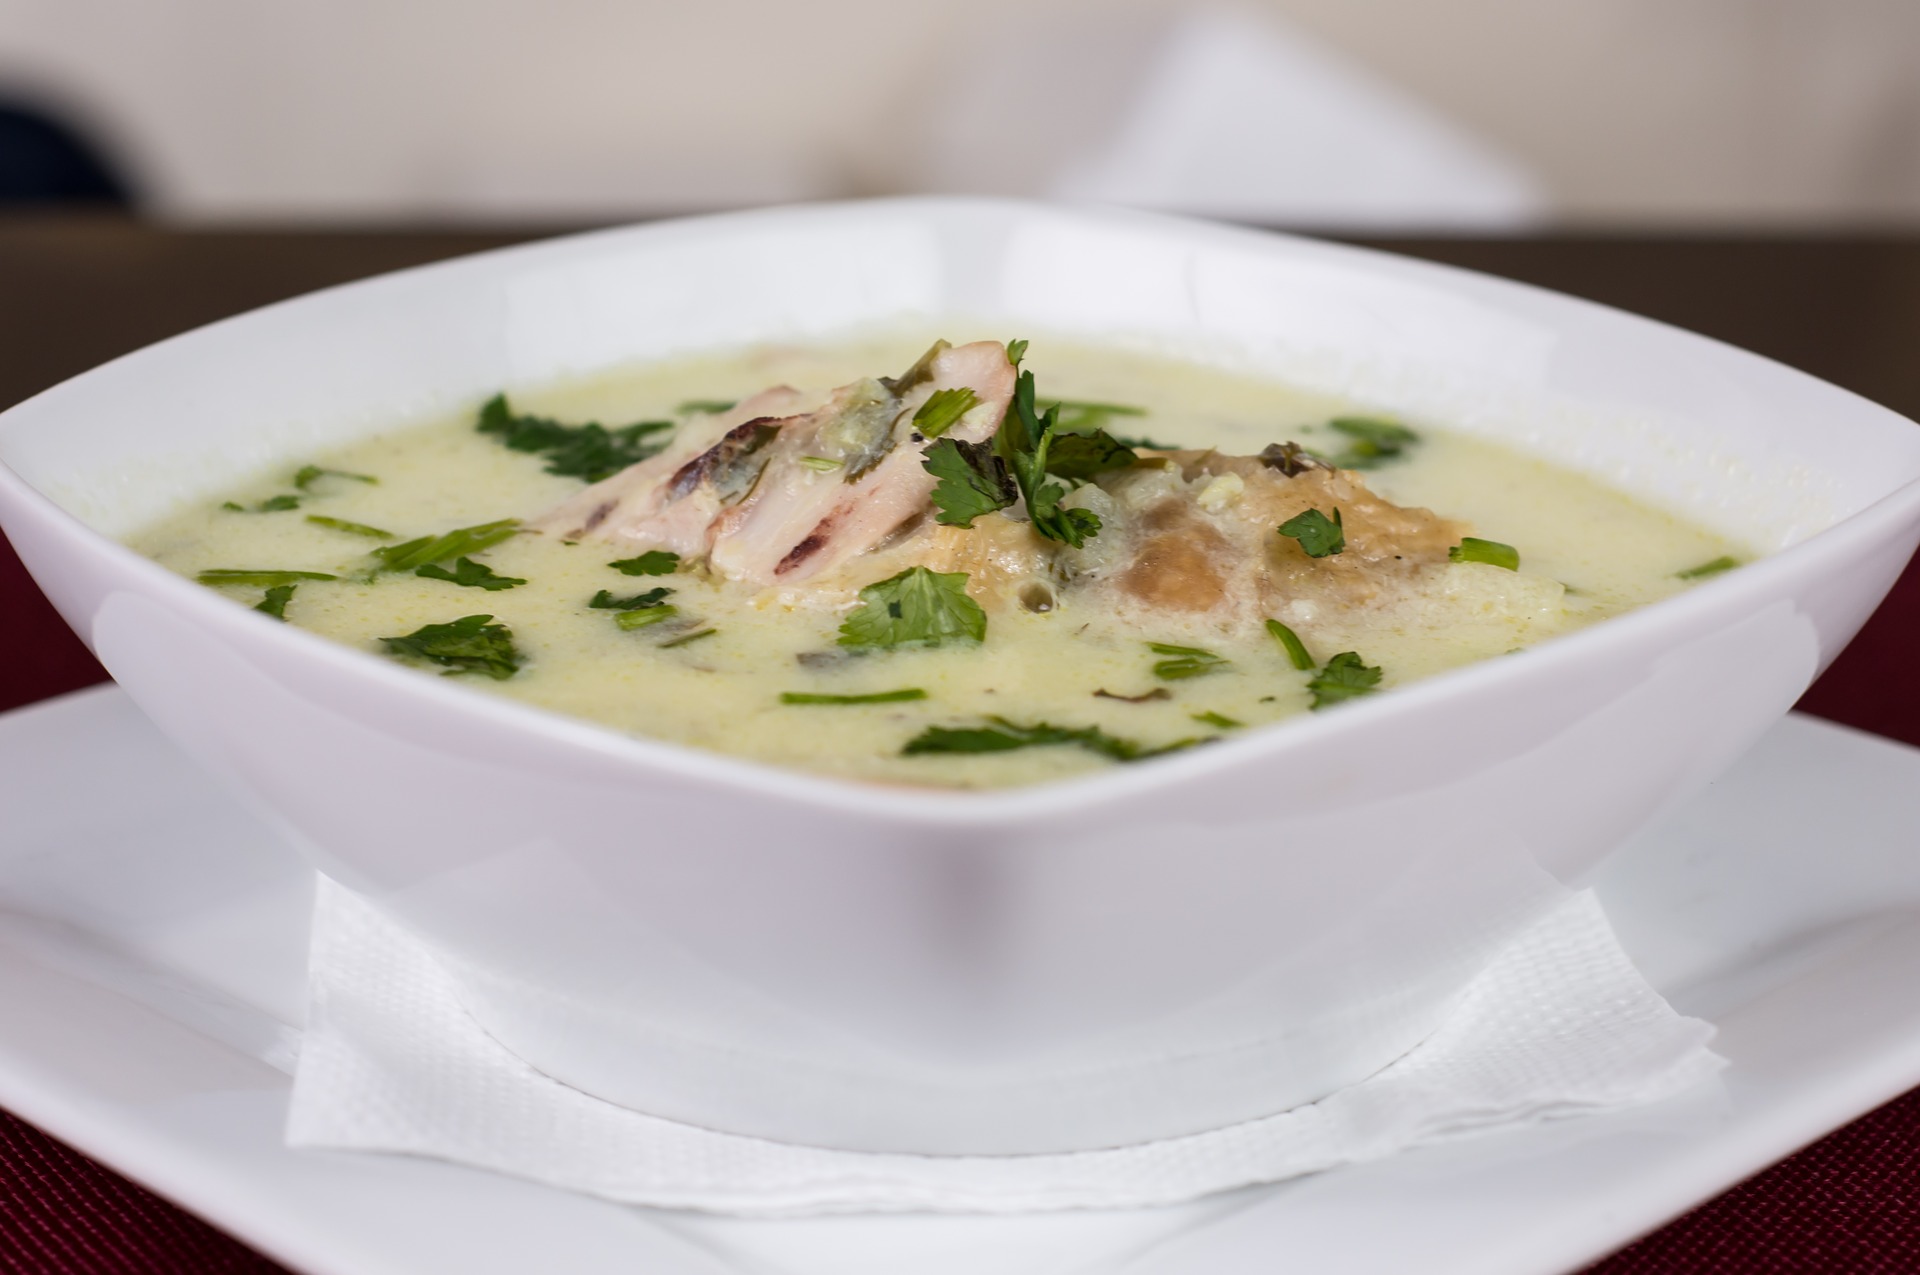 Sup ayam merupakan makanan yang bisa membantu meringankan flu. (Pixabay)